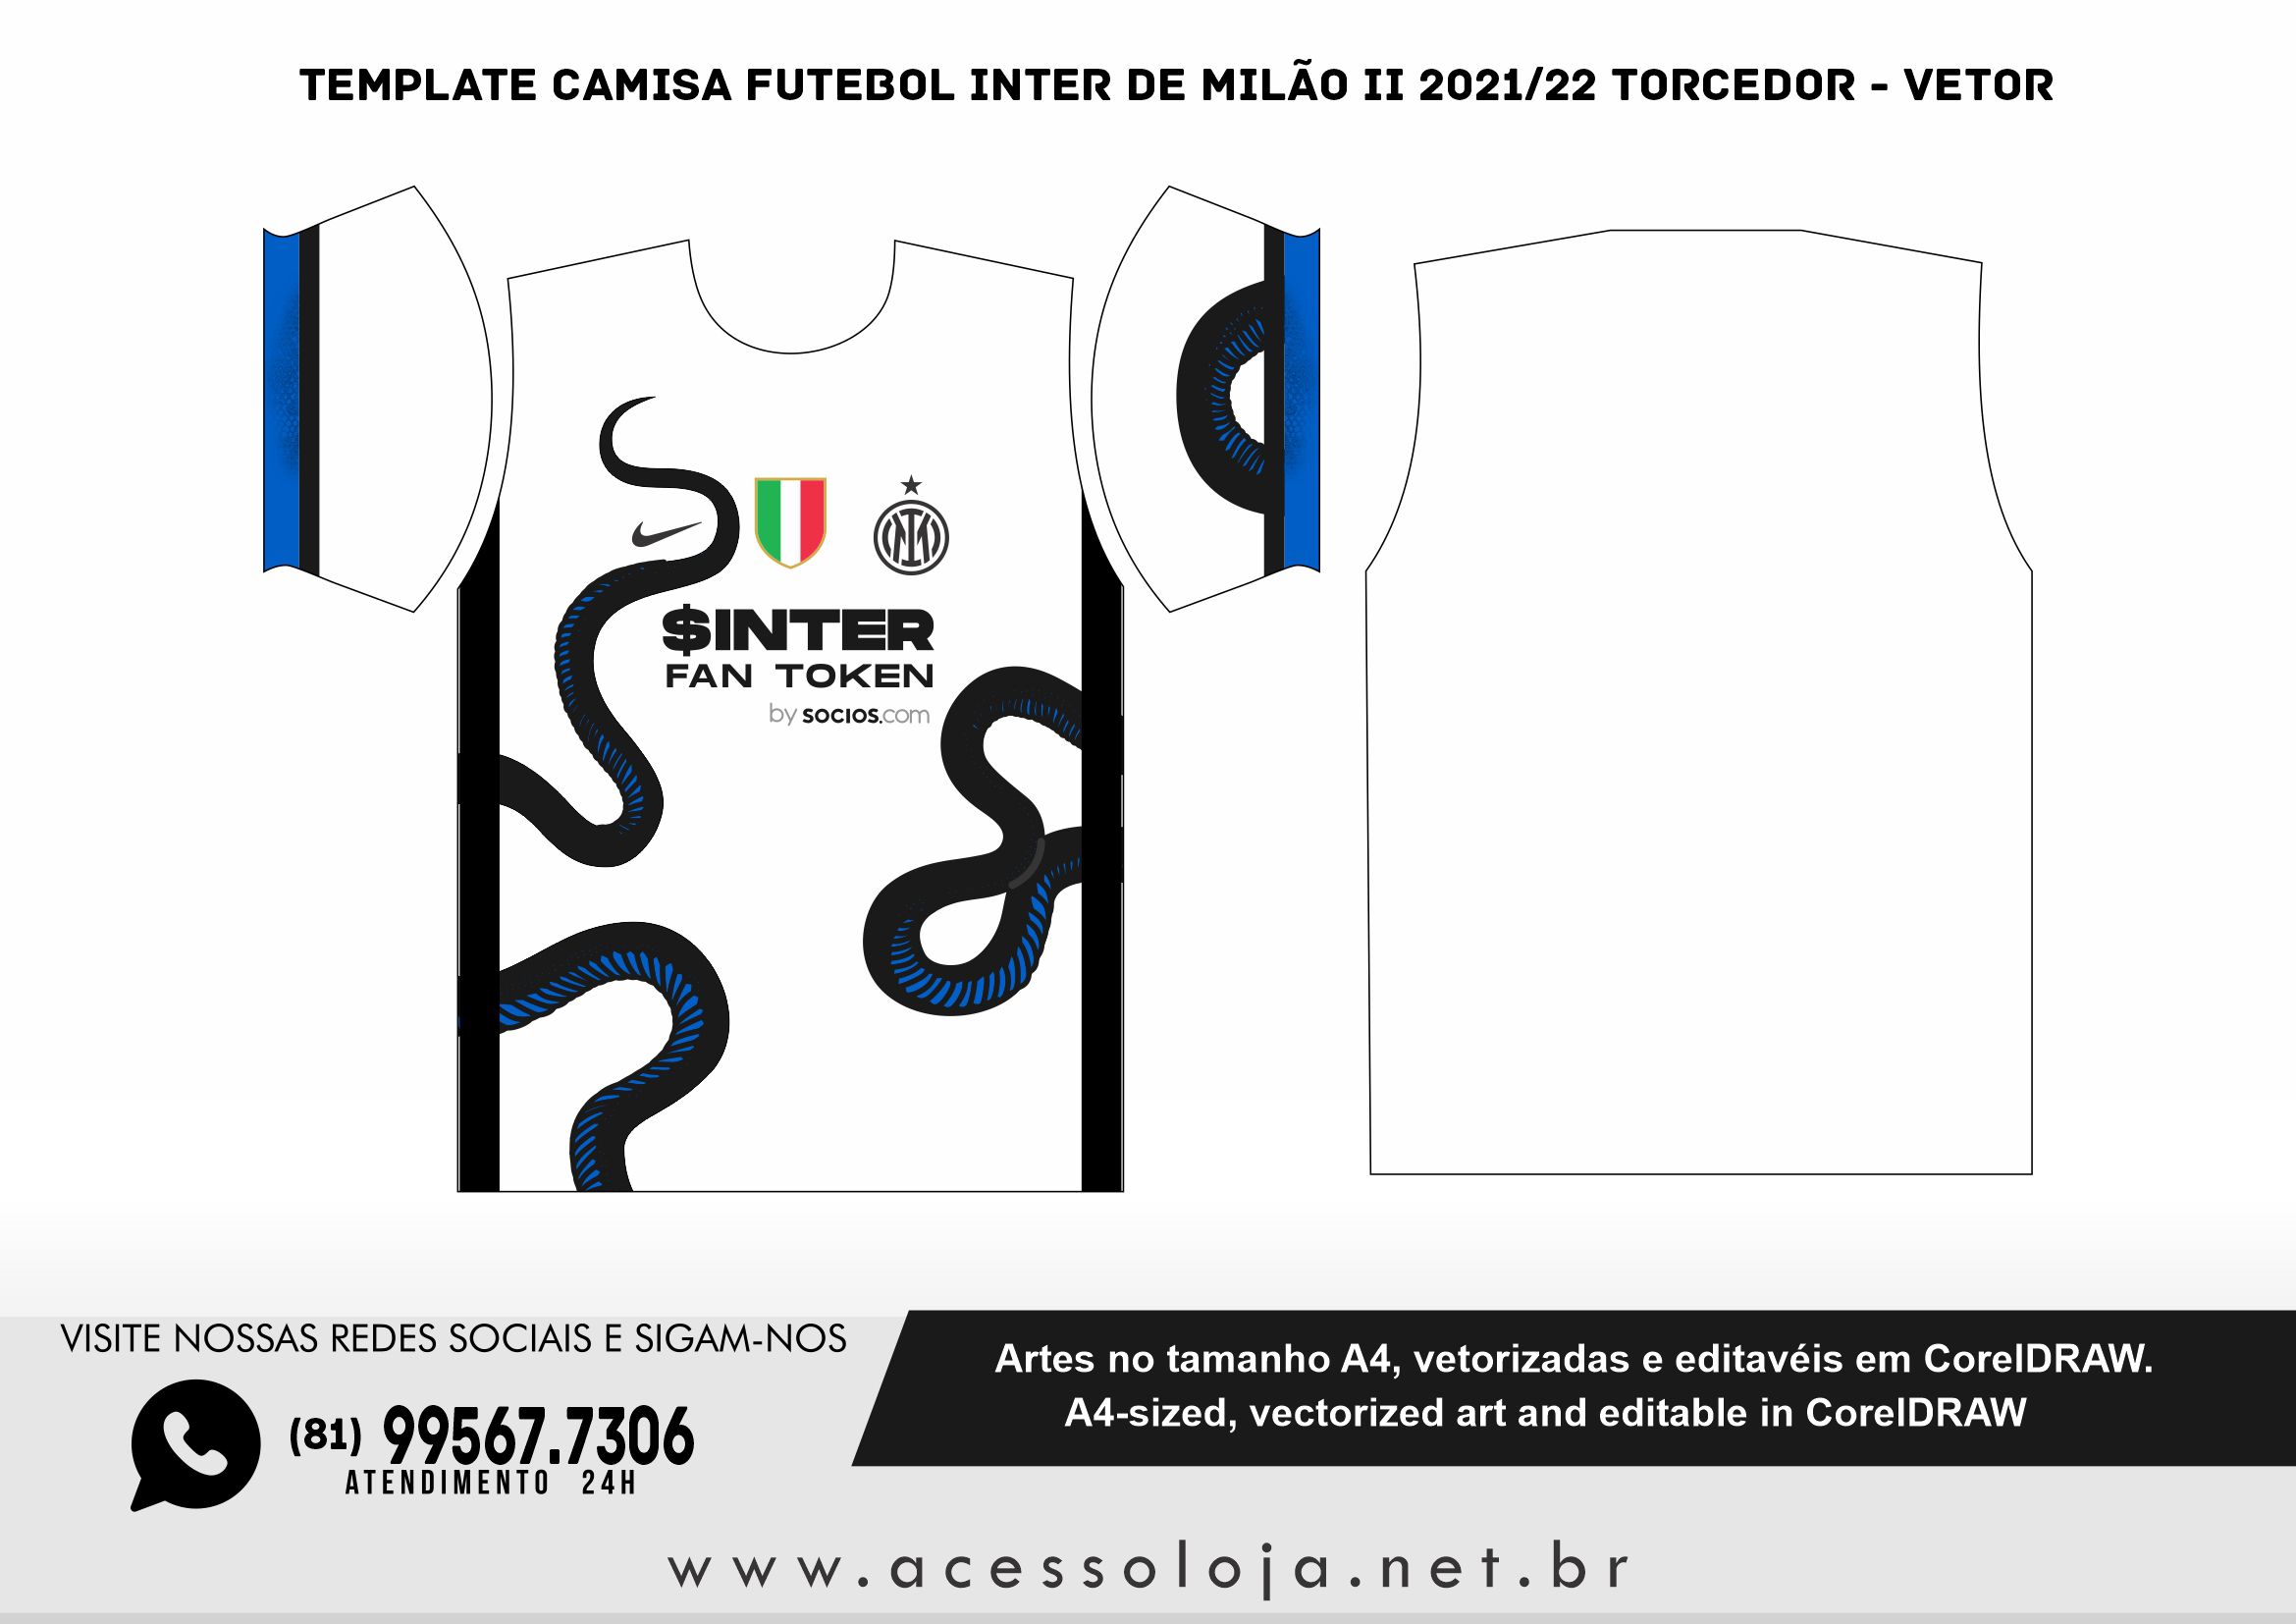 Template Camisa Futebol Inter de Milão II 2021/22 Torcedor - Vetor - Acesso  Loja - A sua loja gráfica